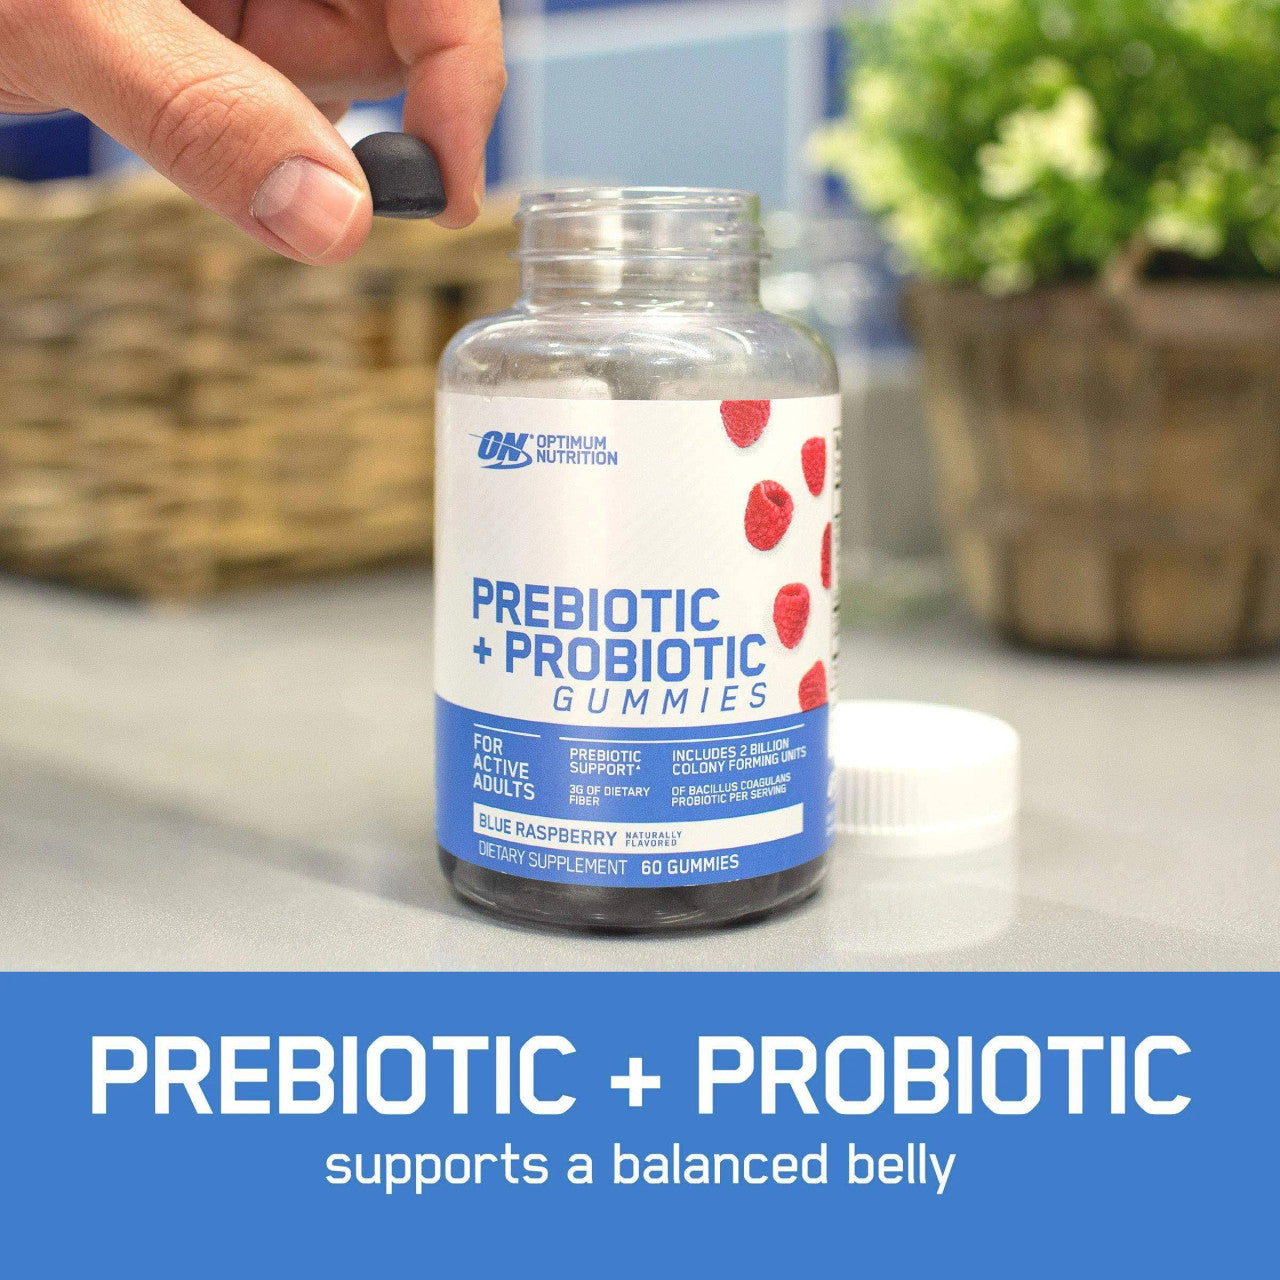 Optimum Nutrition Prebiotic + Probiotic Gummies Product Highlights Prebiotic + Probiotic